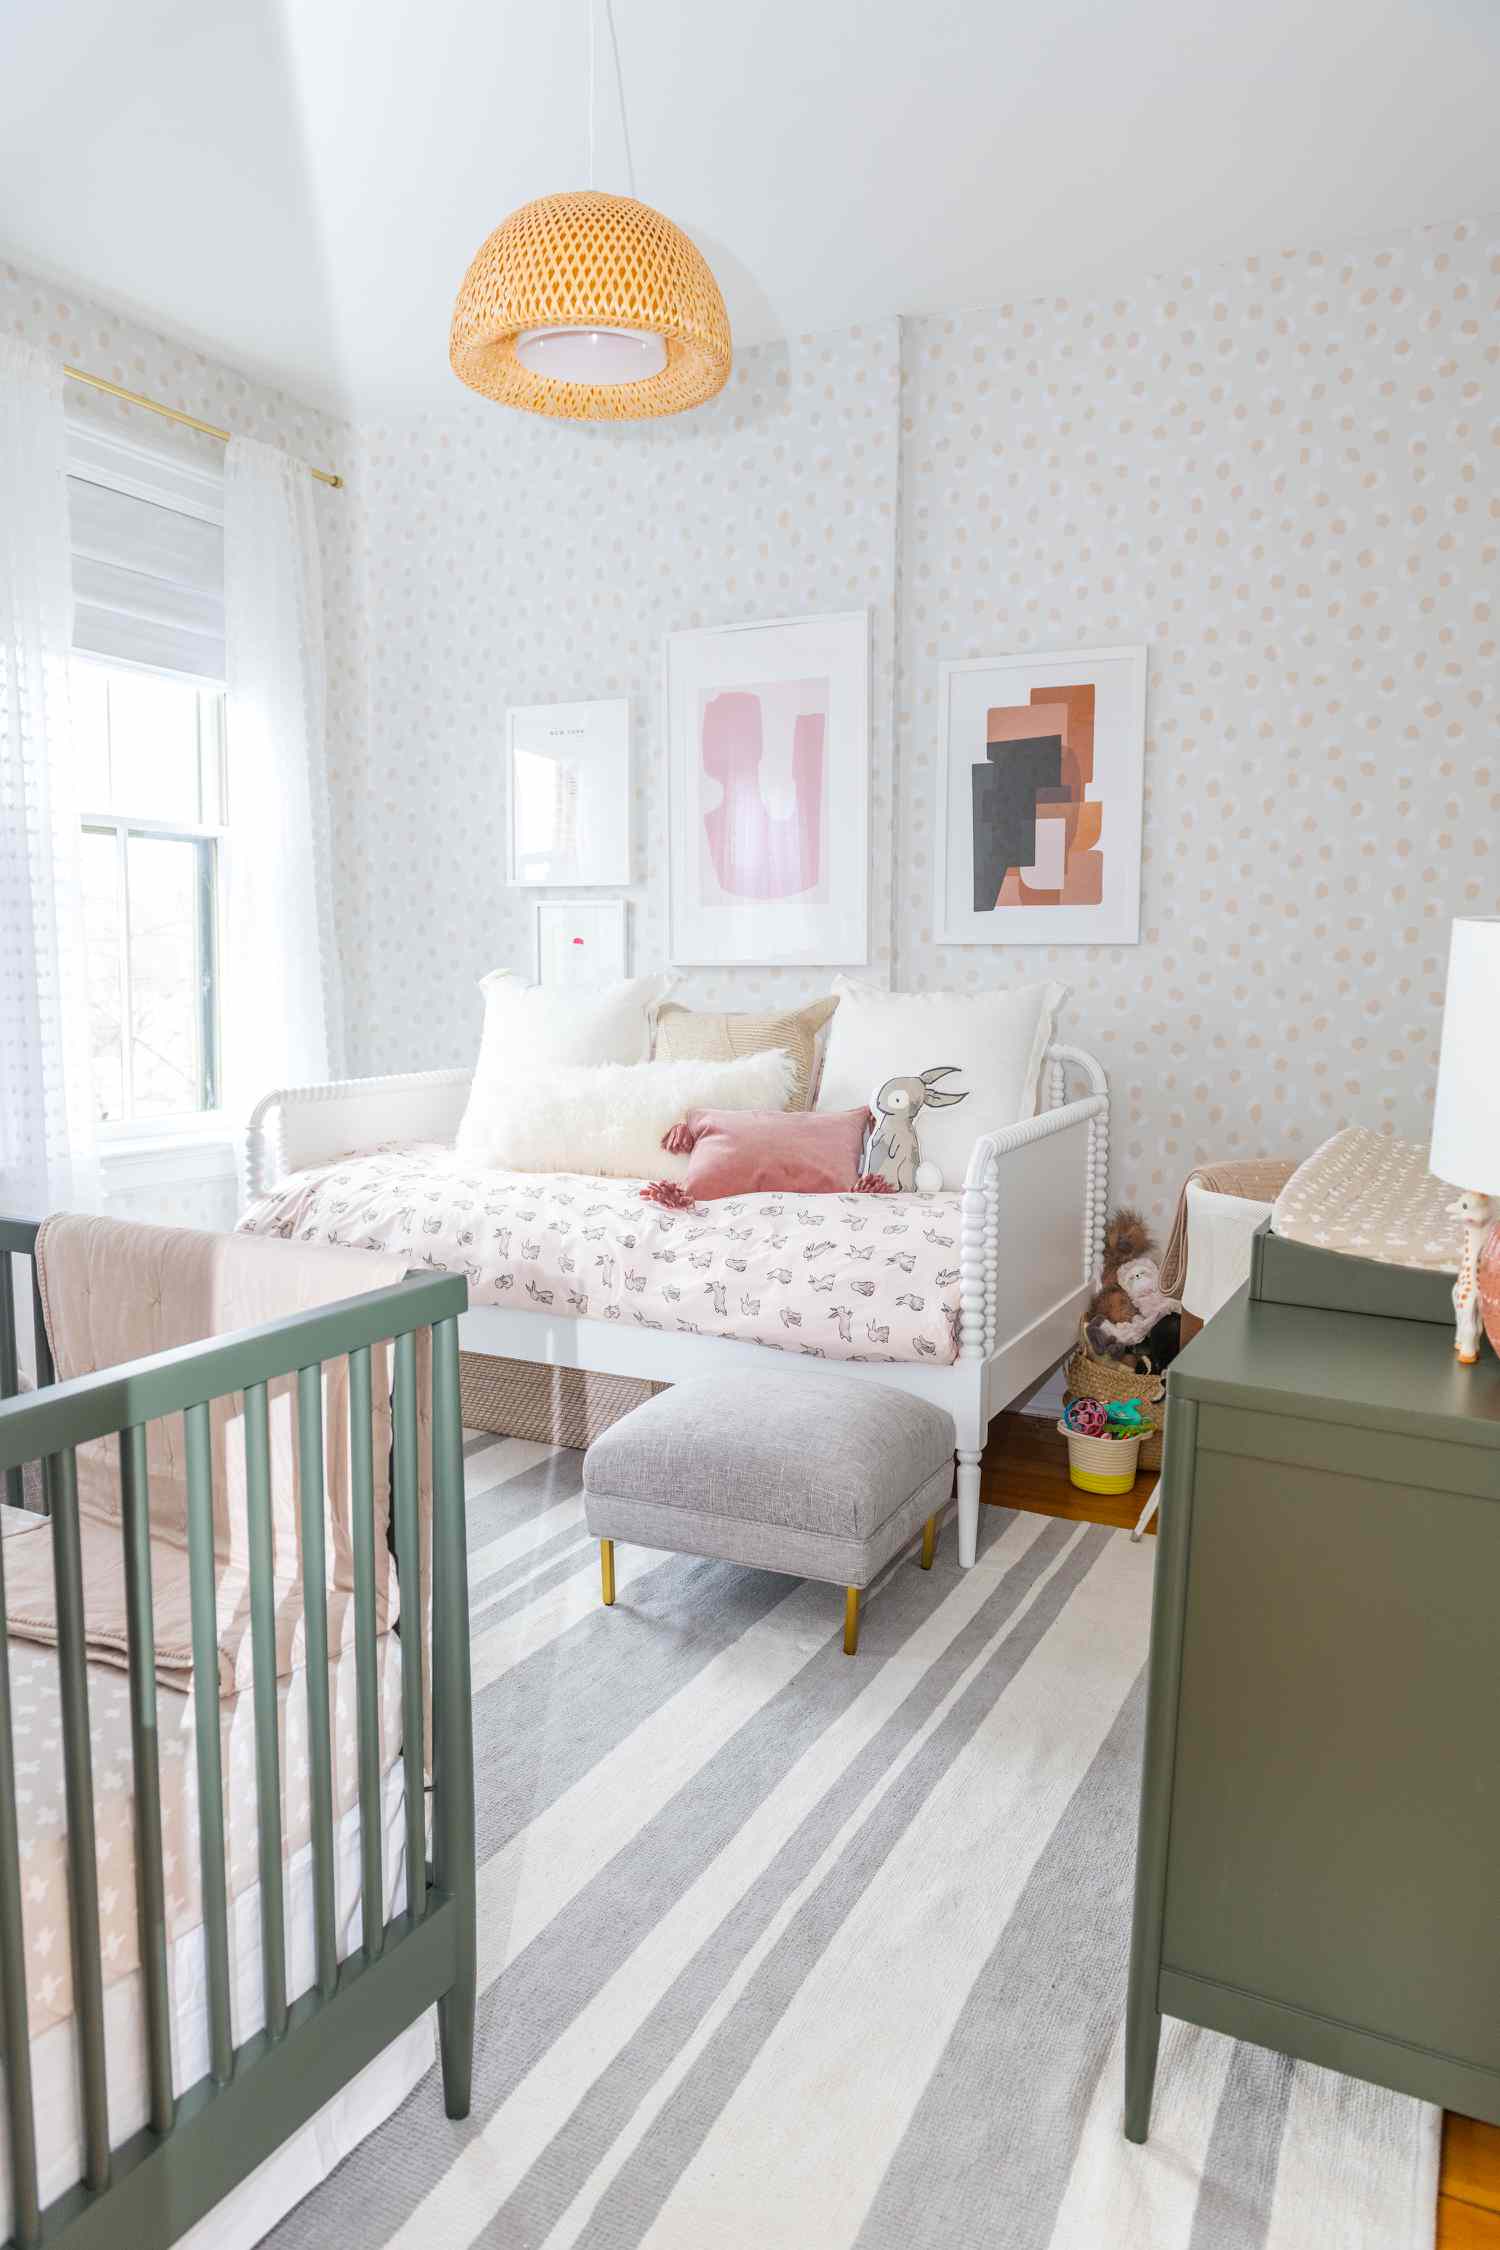 Helles, fröhliches Kinderzimmer mit Rattan-Hängern und grünen Möbeln.